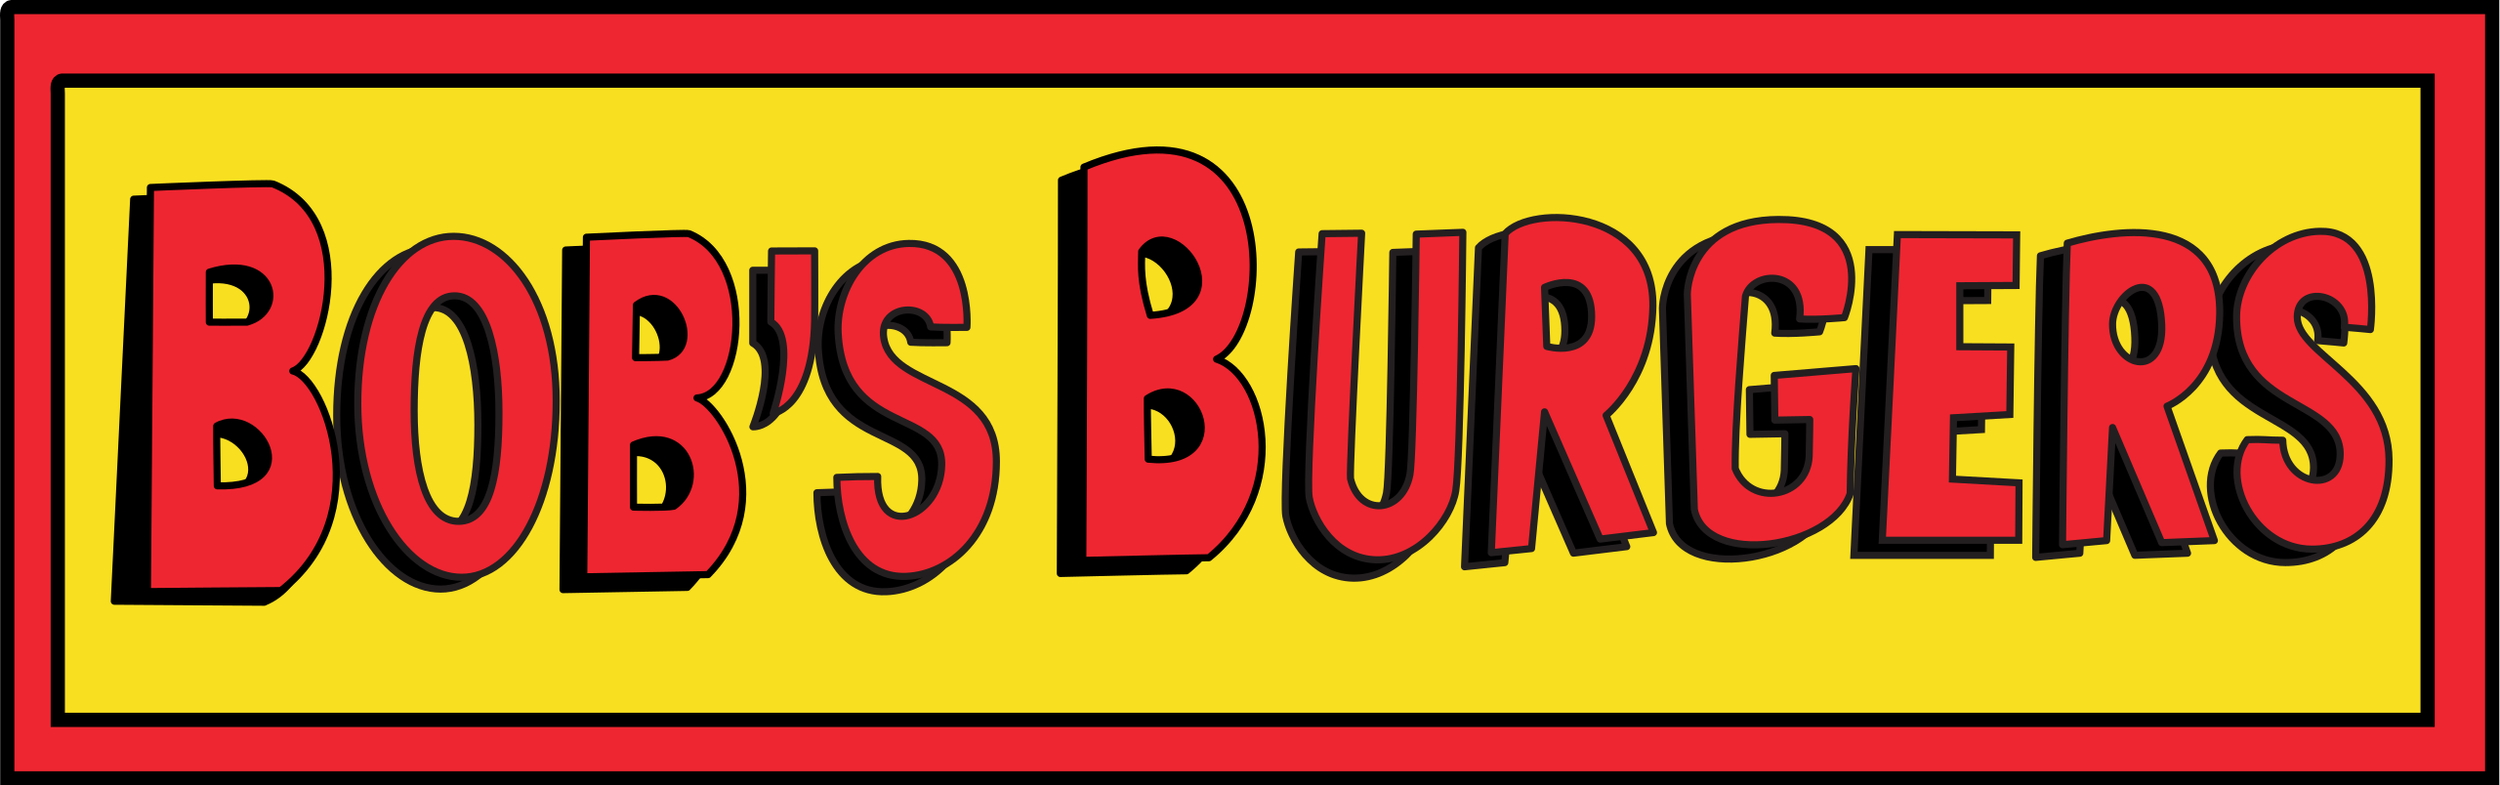 Bob's_Burgers_logo.svg.png